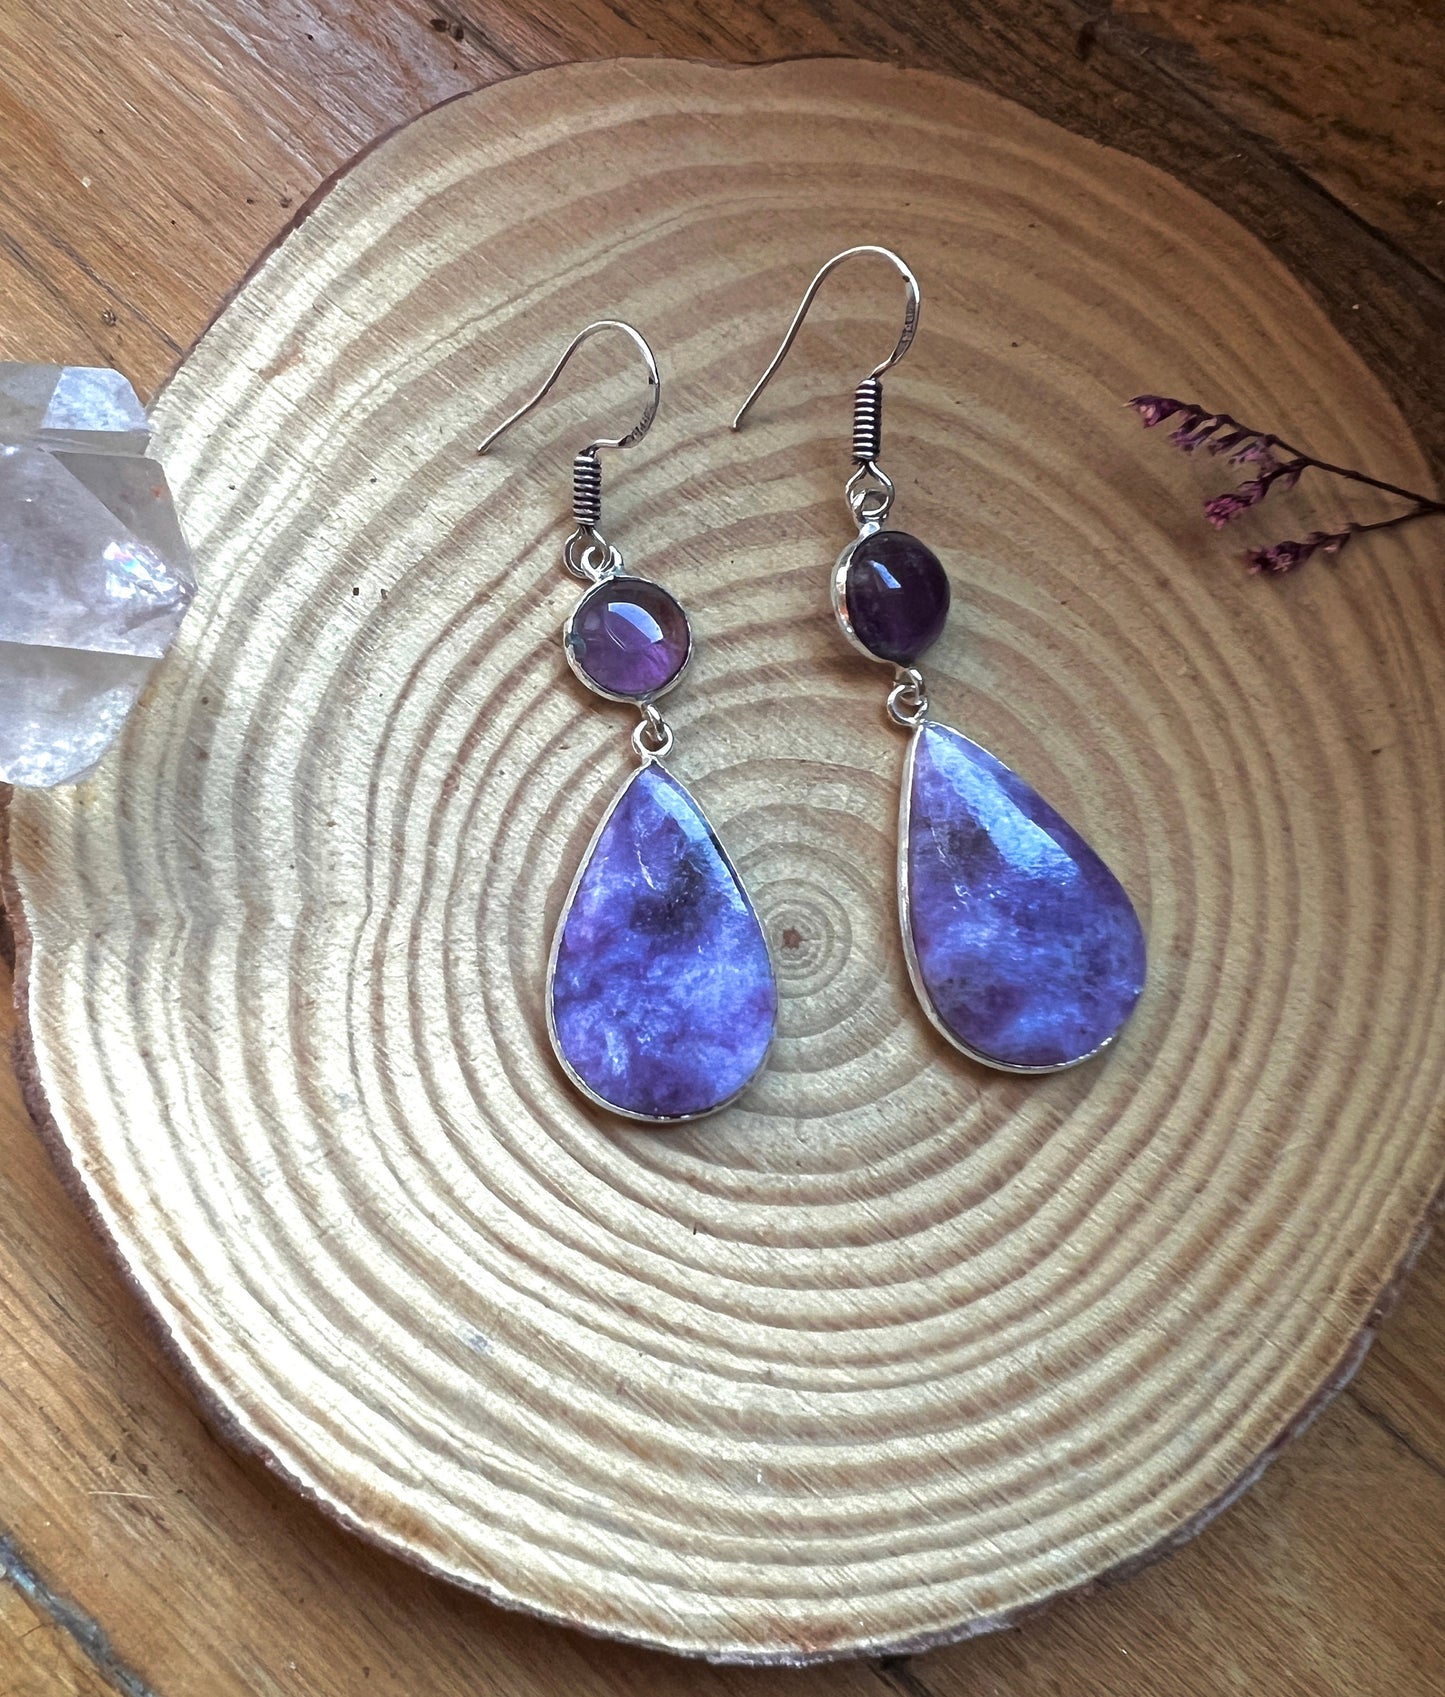 Purple Charoite And Amethyst Earrings In Sterling Silver Dangle Earrings